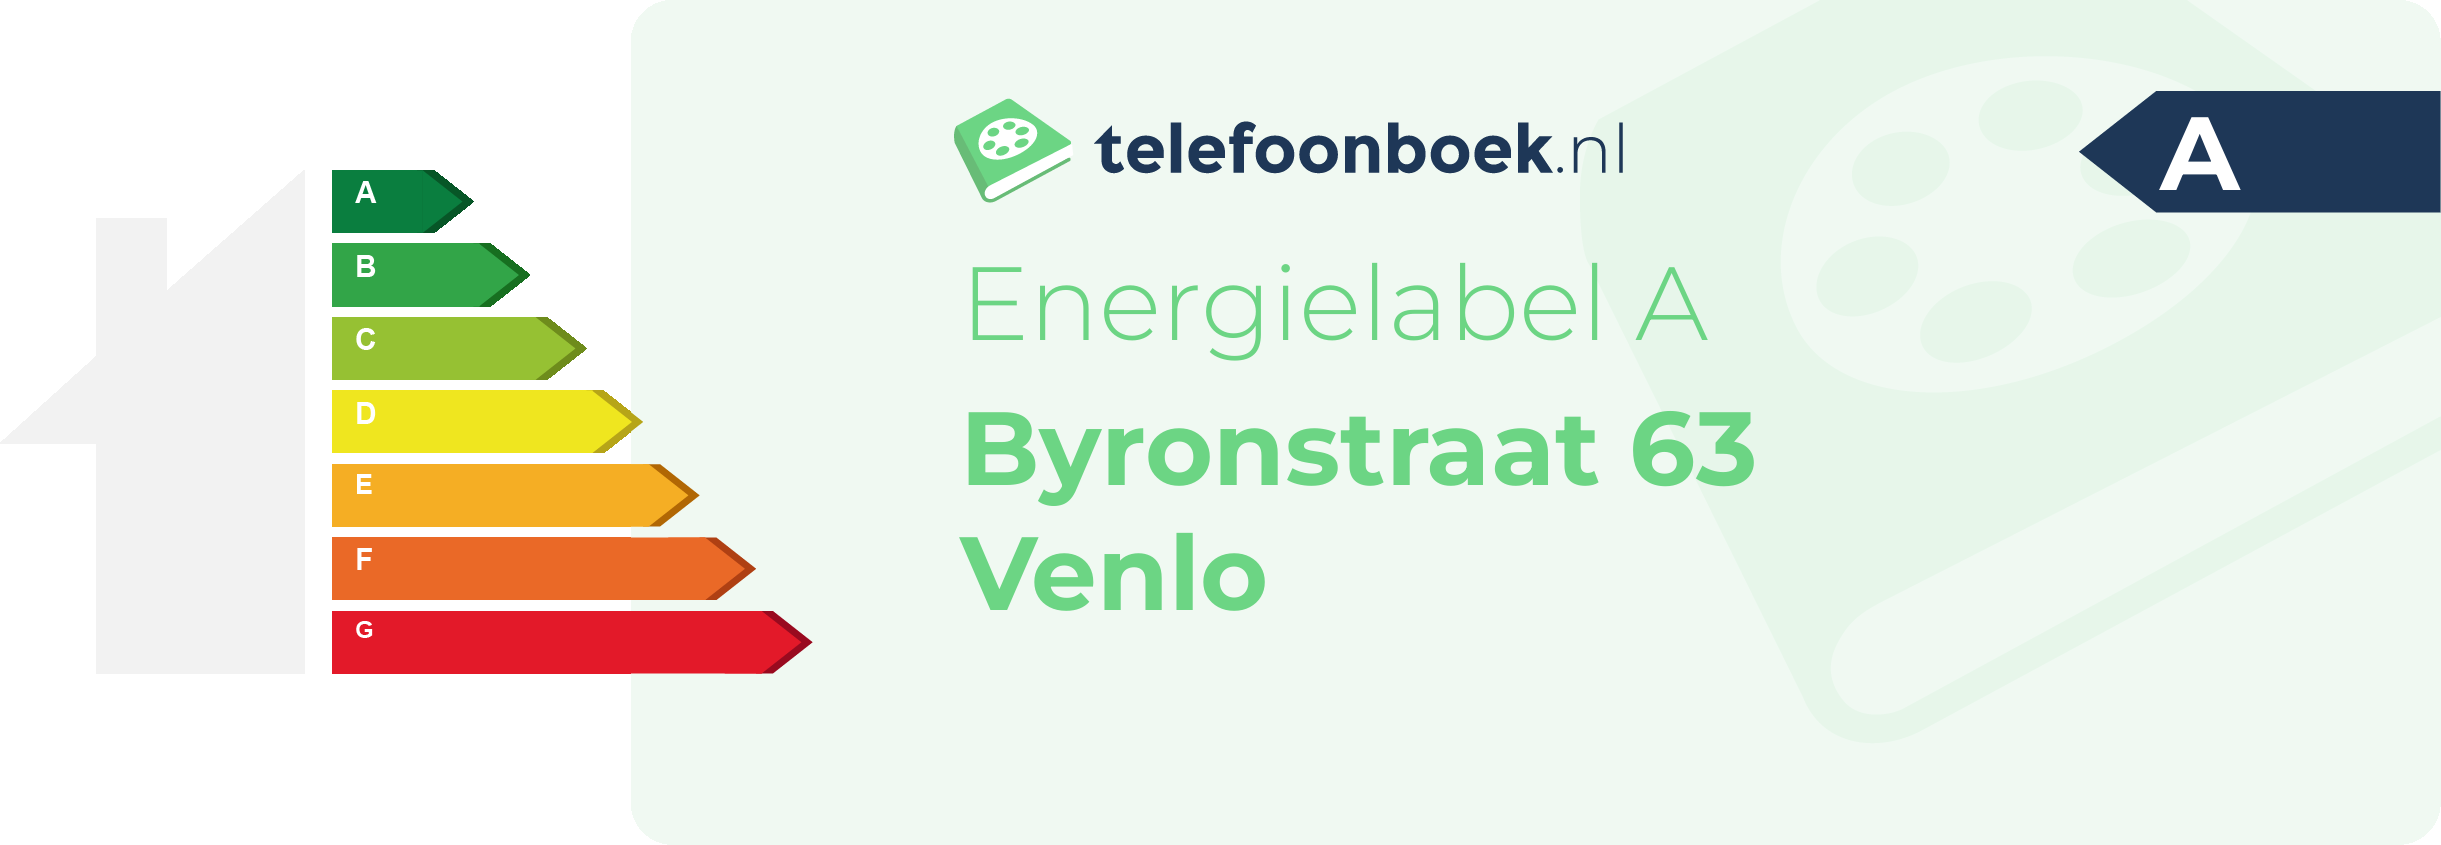 Energielabel Byronstraat 63 Venlo